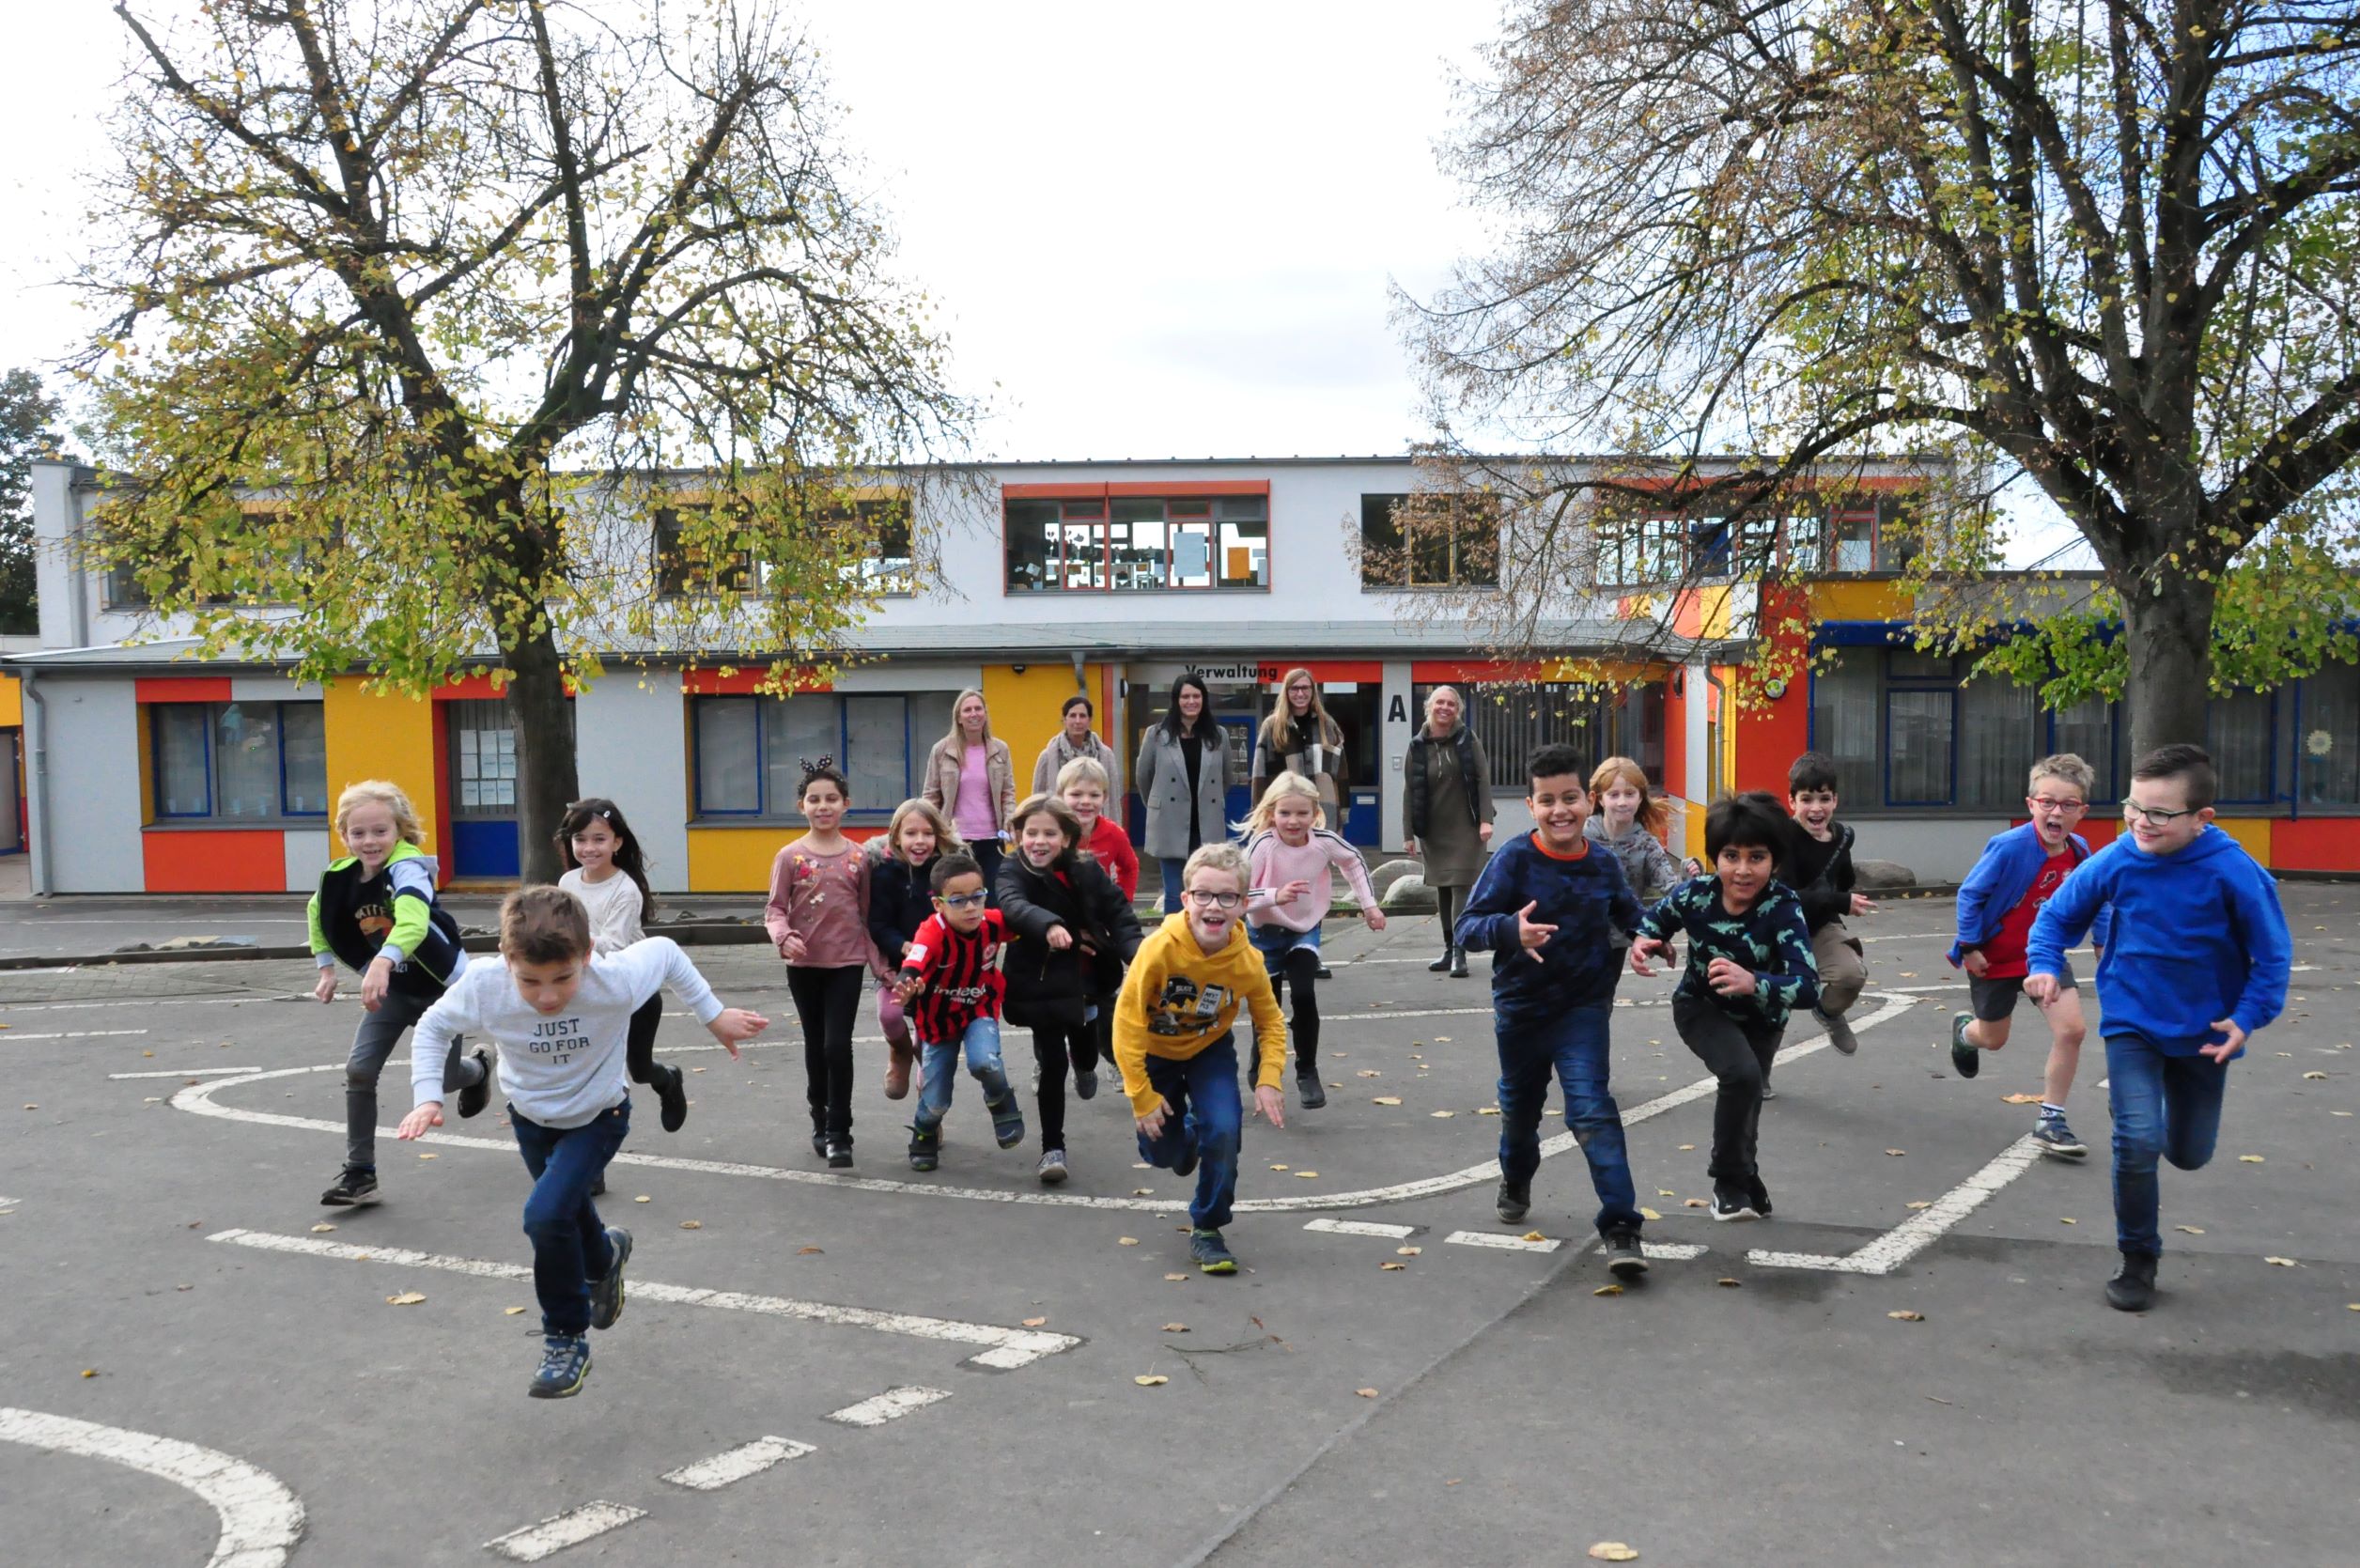 Schülerinnen und Schüler rennen auf dem Pausenhof.